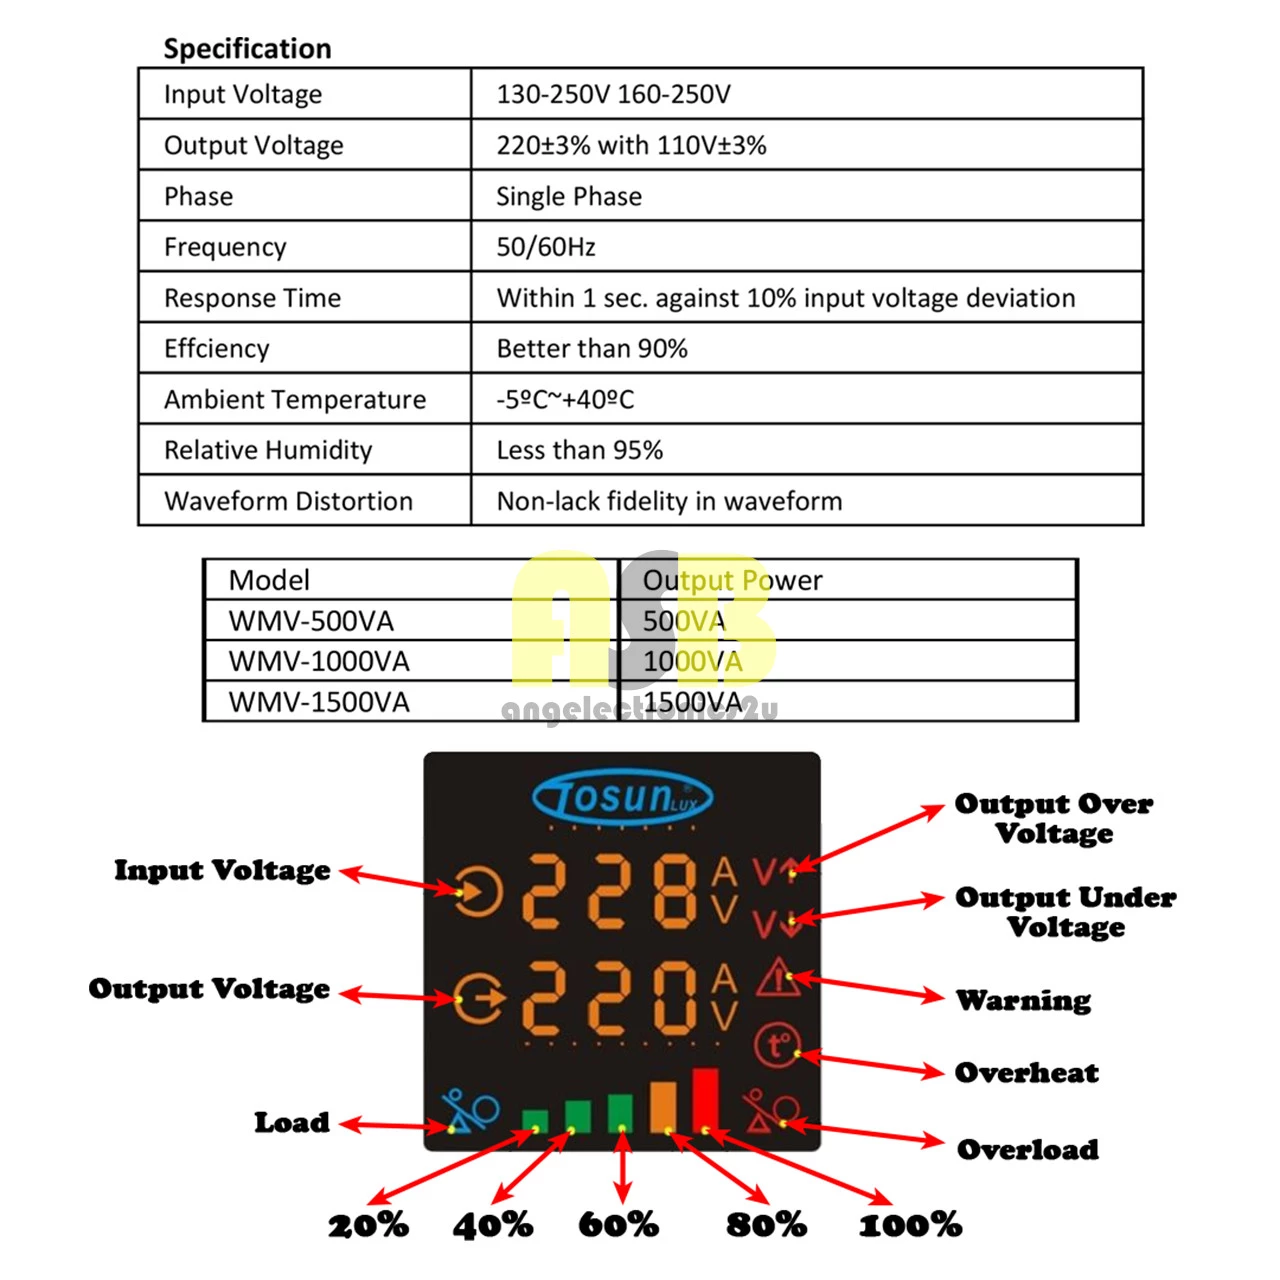 (1pc) TOSUNLUX Voltage Stabilizer WMV ( 500VA / 1000VA / 1500VA )